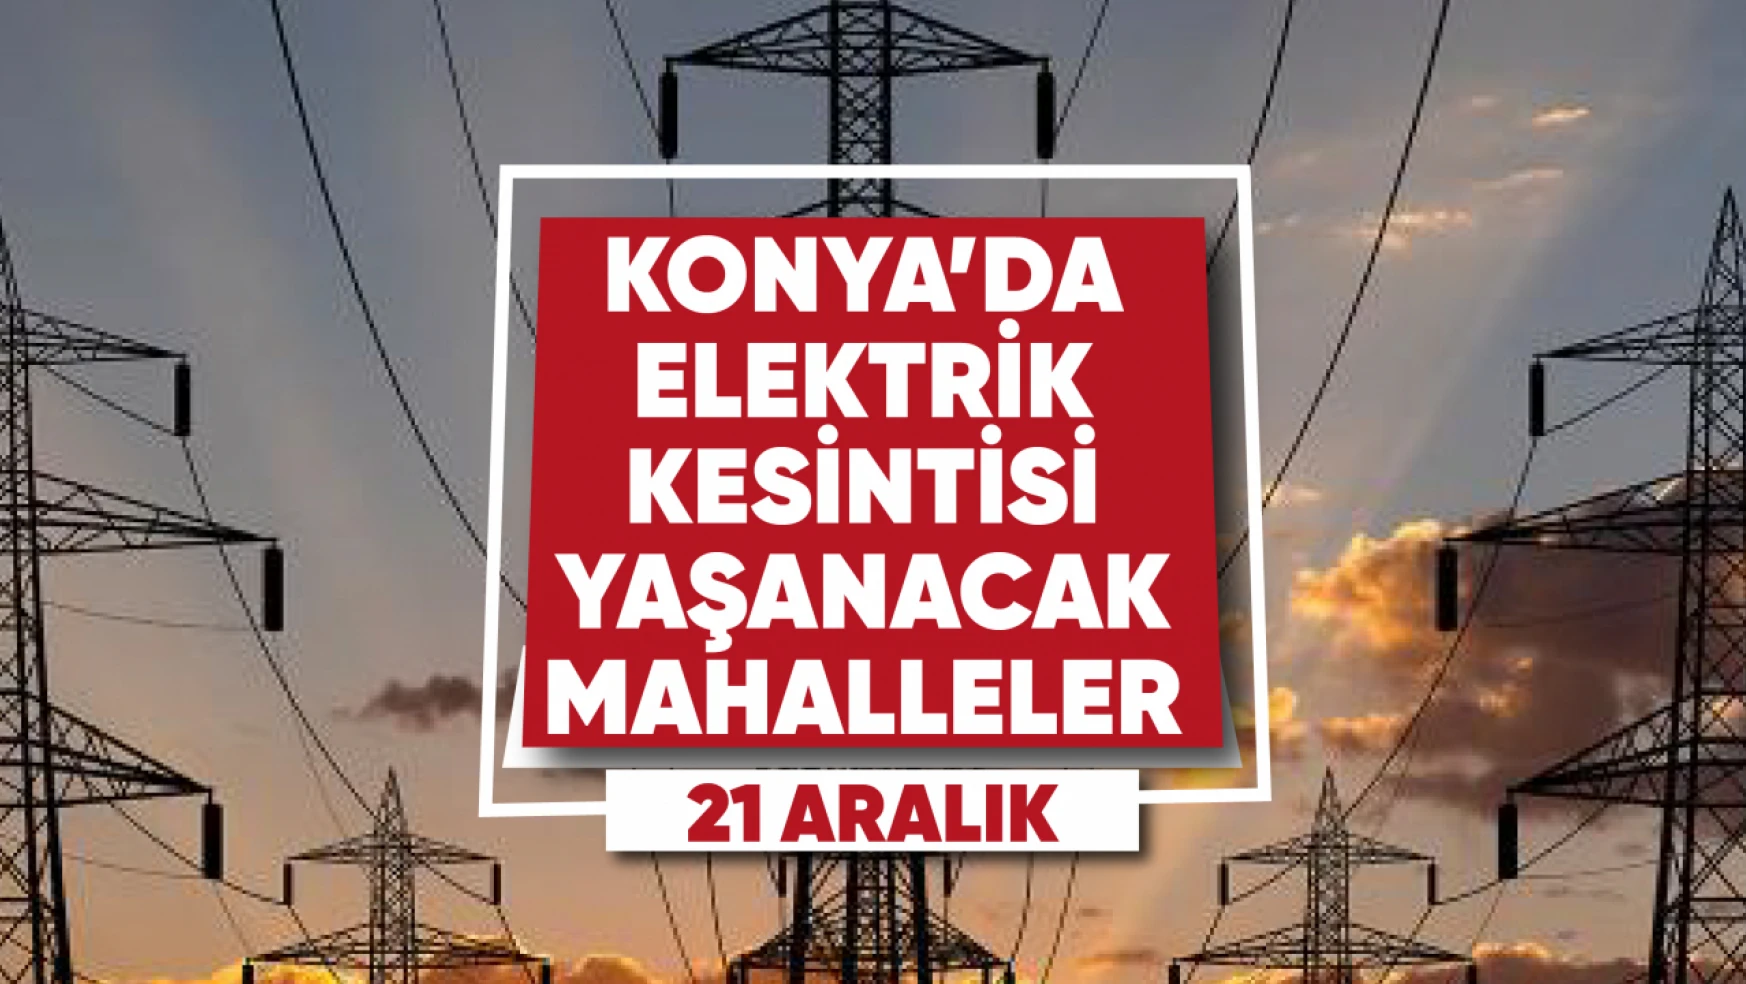 Konya'da elektrik kesintisi yaşanacak mahalle ve sokaklar (21 Aralık)